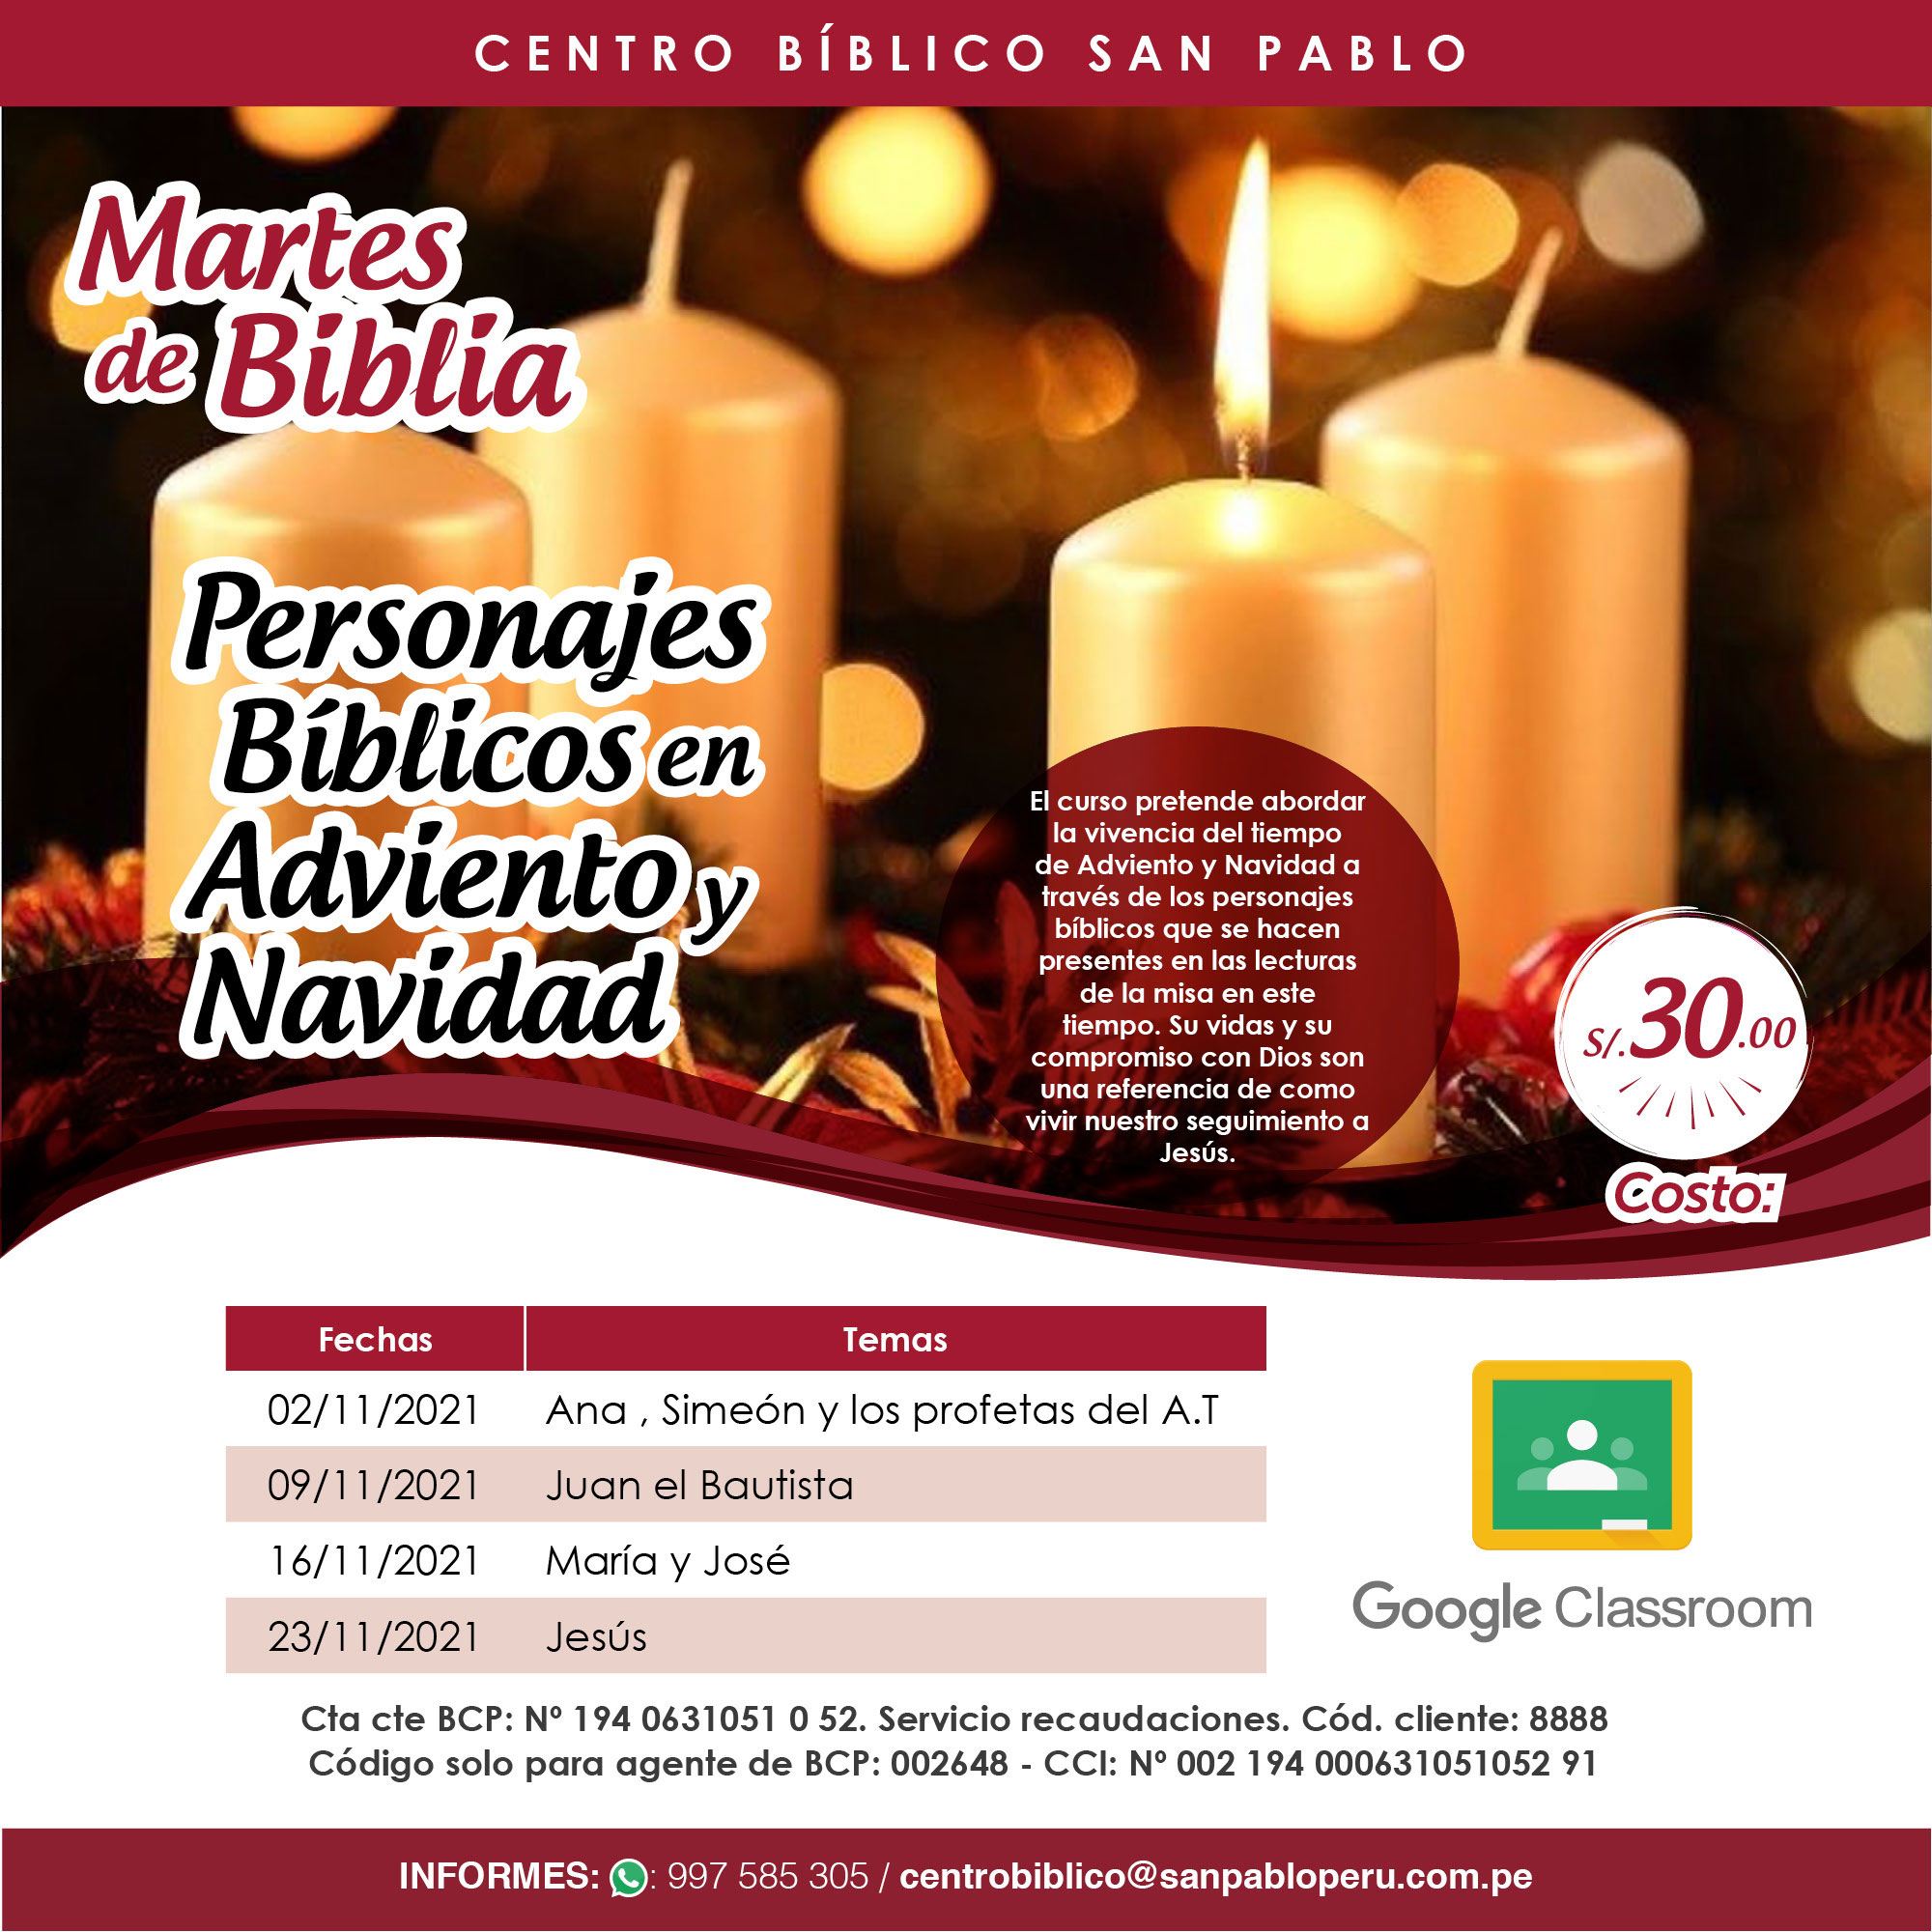 Curso Virtual Martes de Biblia: “Personajes Bíblicos en Adviento y Navidad”